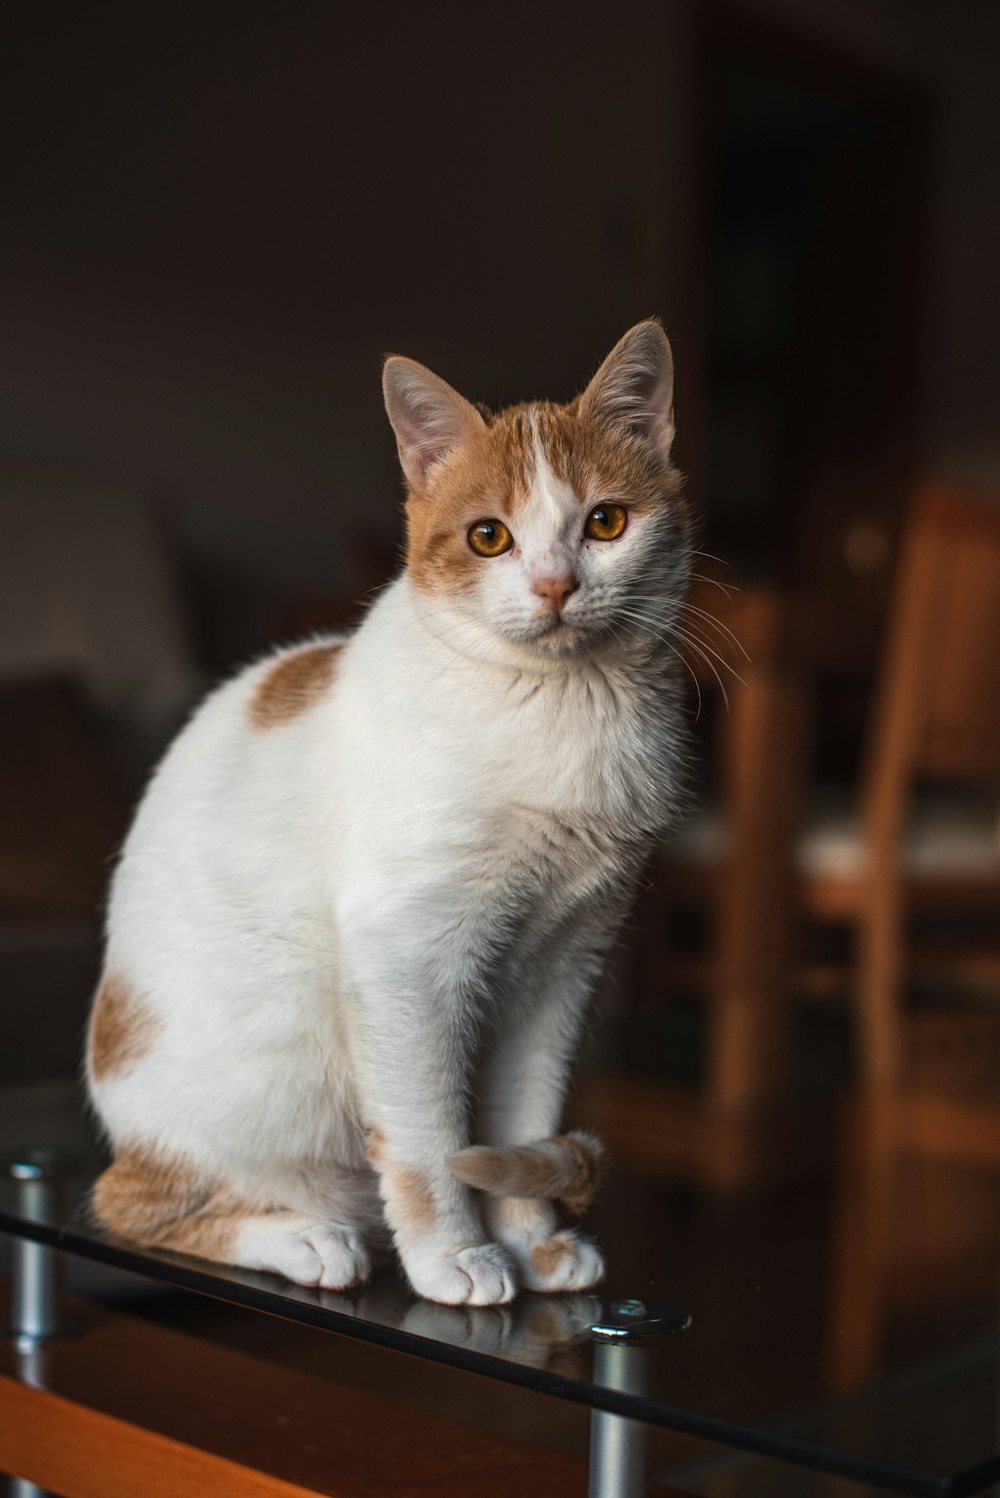 white and orange tabby cat